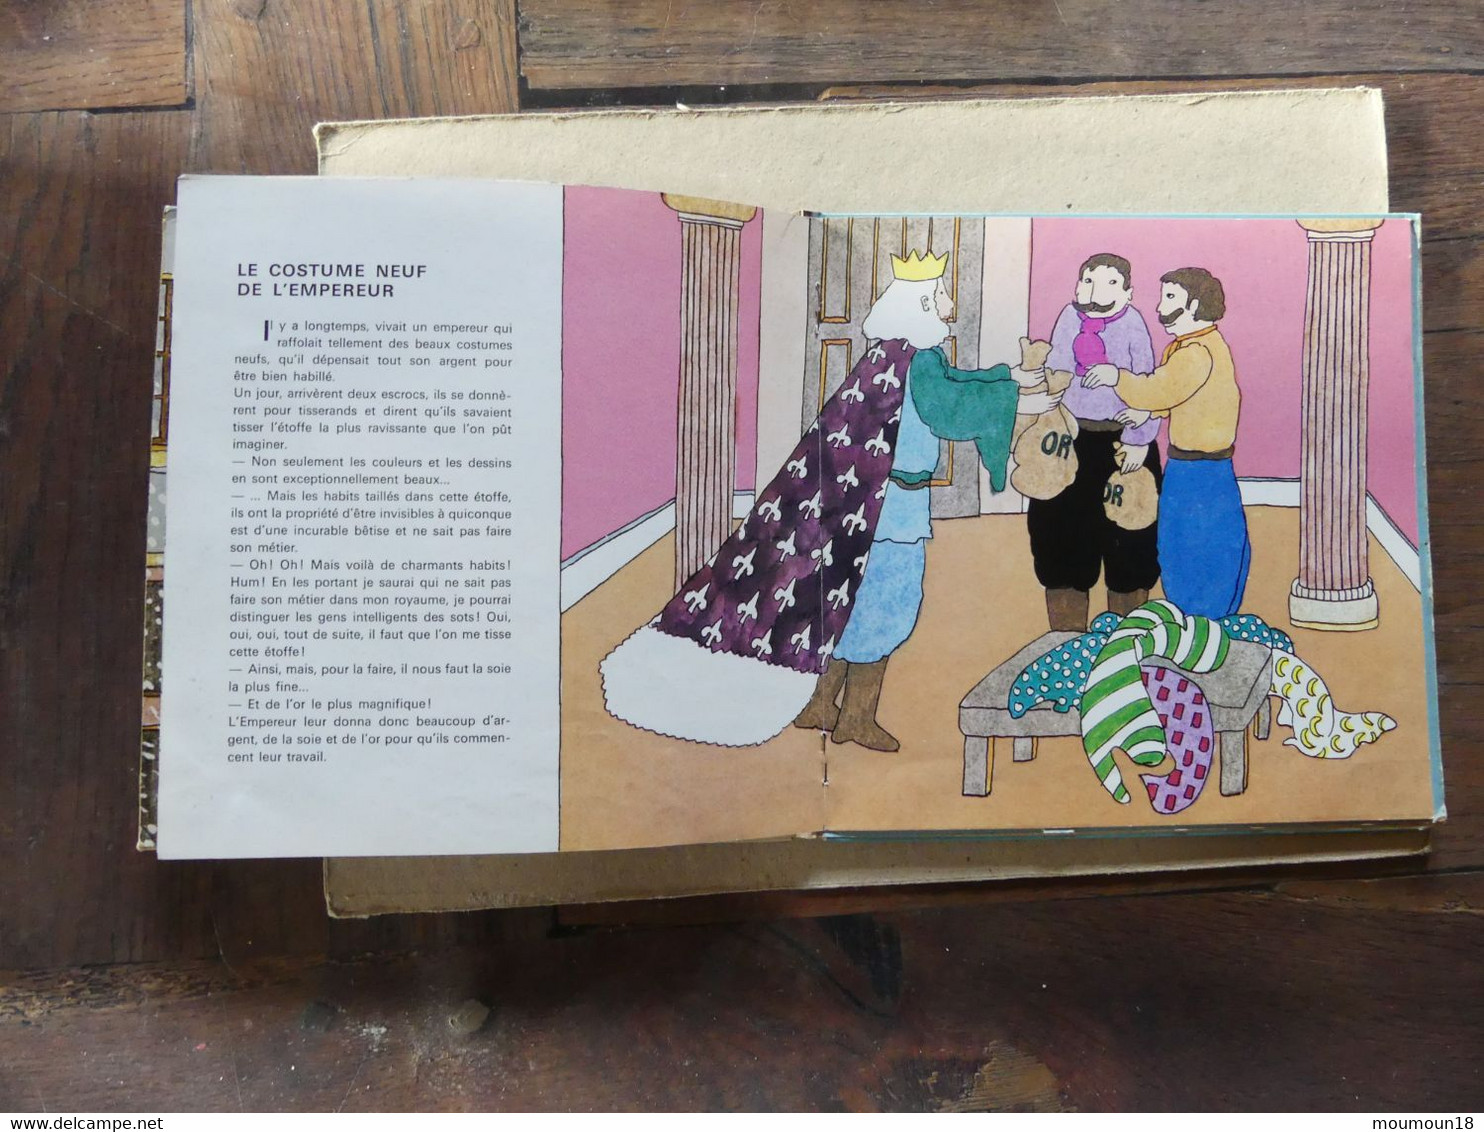 45 T La Petite Fille Aux Allumettes Le Costume Neuf De L'empereur 2 Disques + 1 Livre Philips 6199050 - Enfants